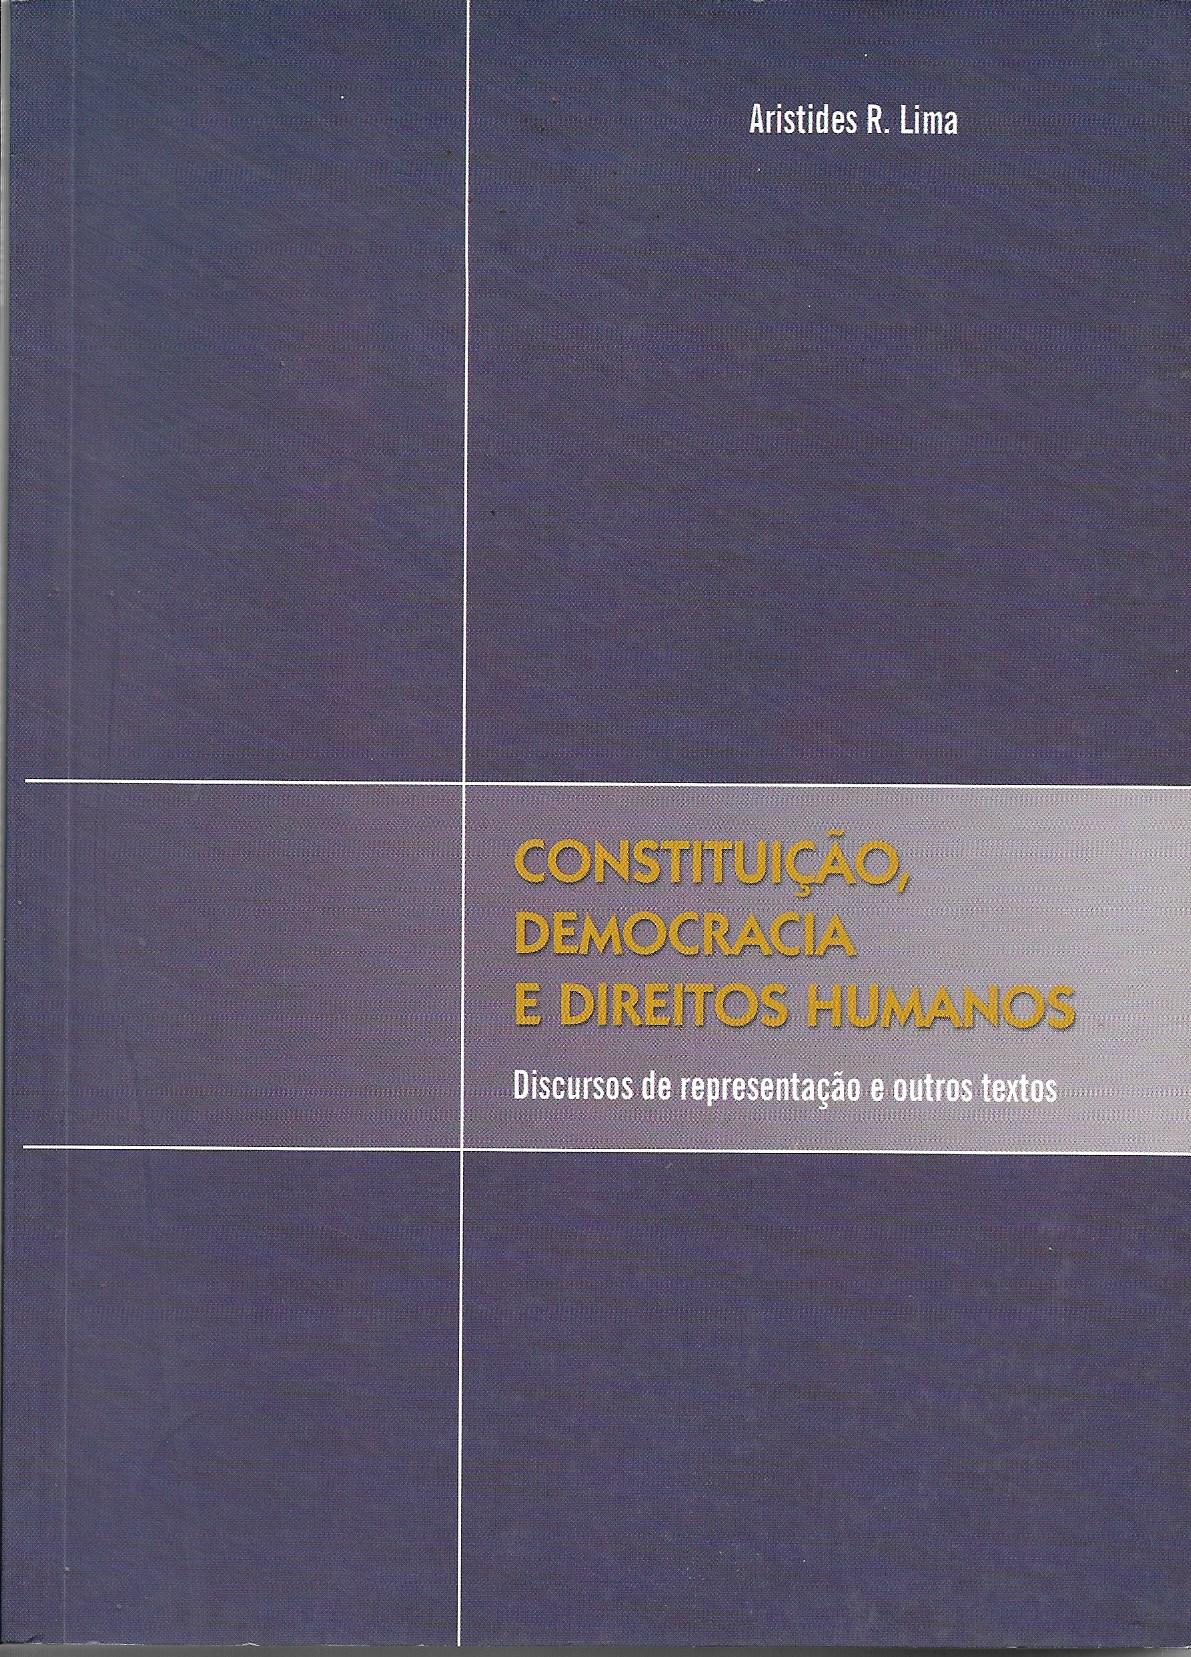 Constituição, Democracia, e Direitos Humanos - Discursos de representação e outros textos 